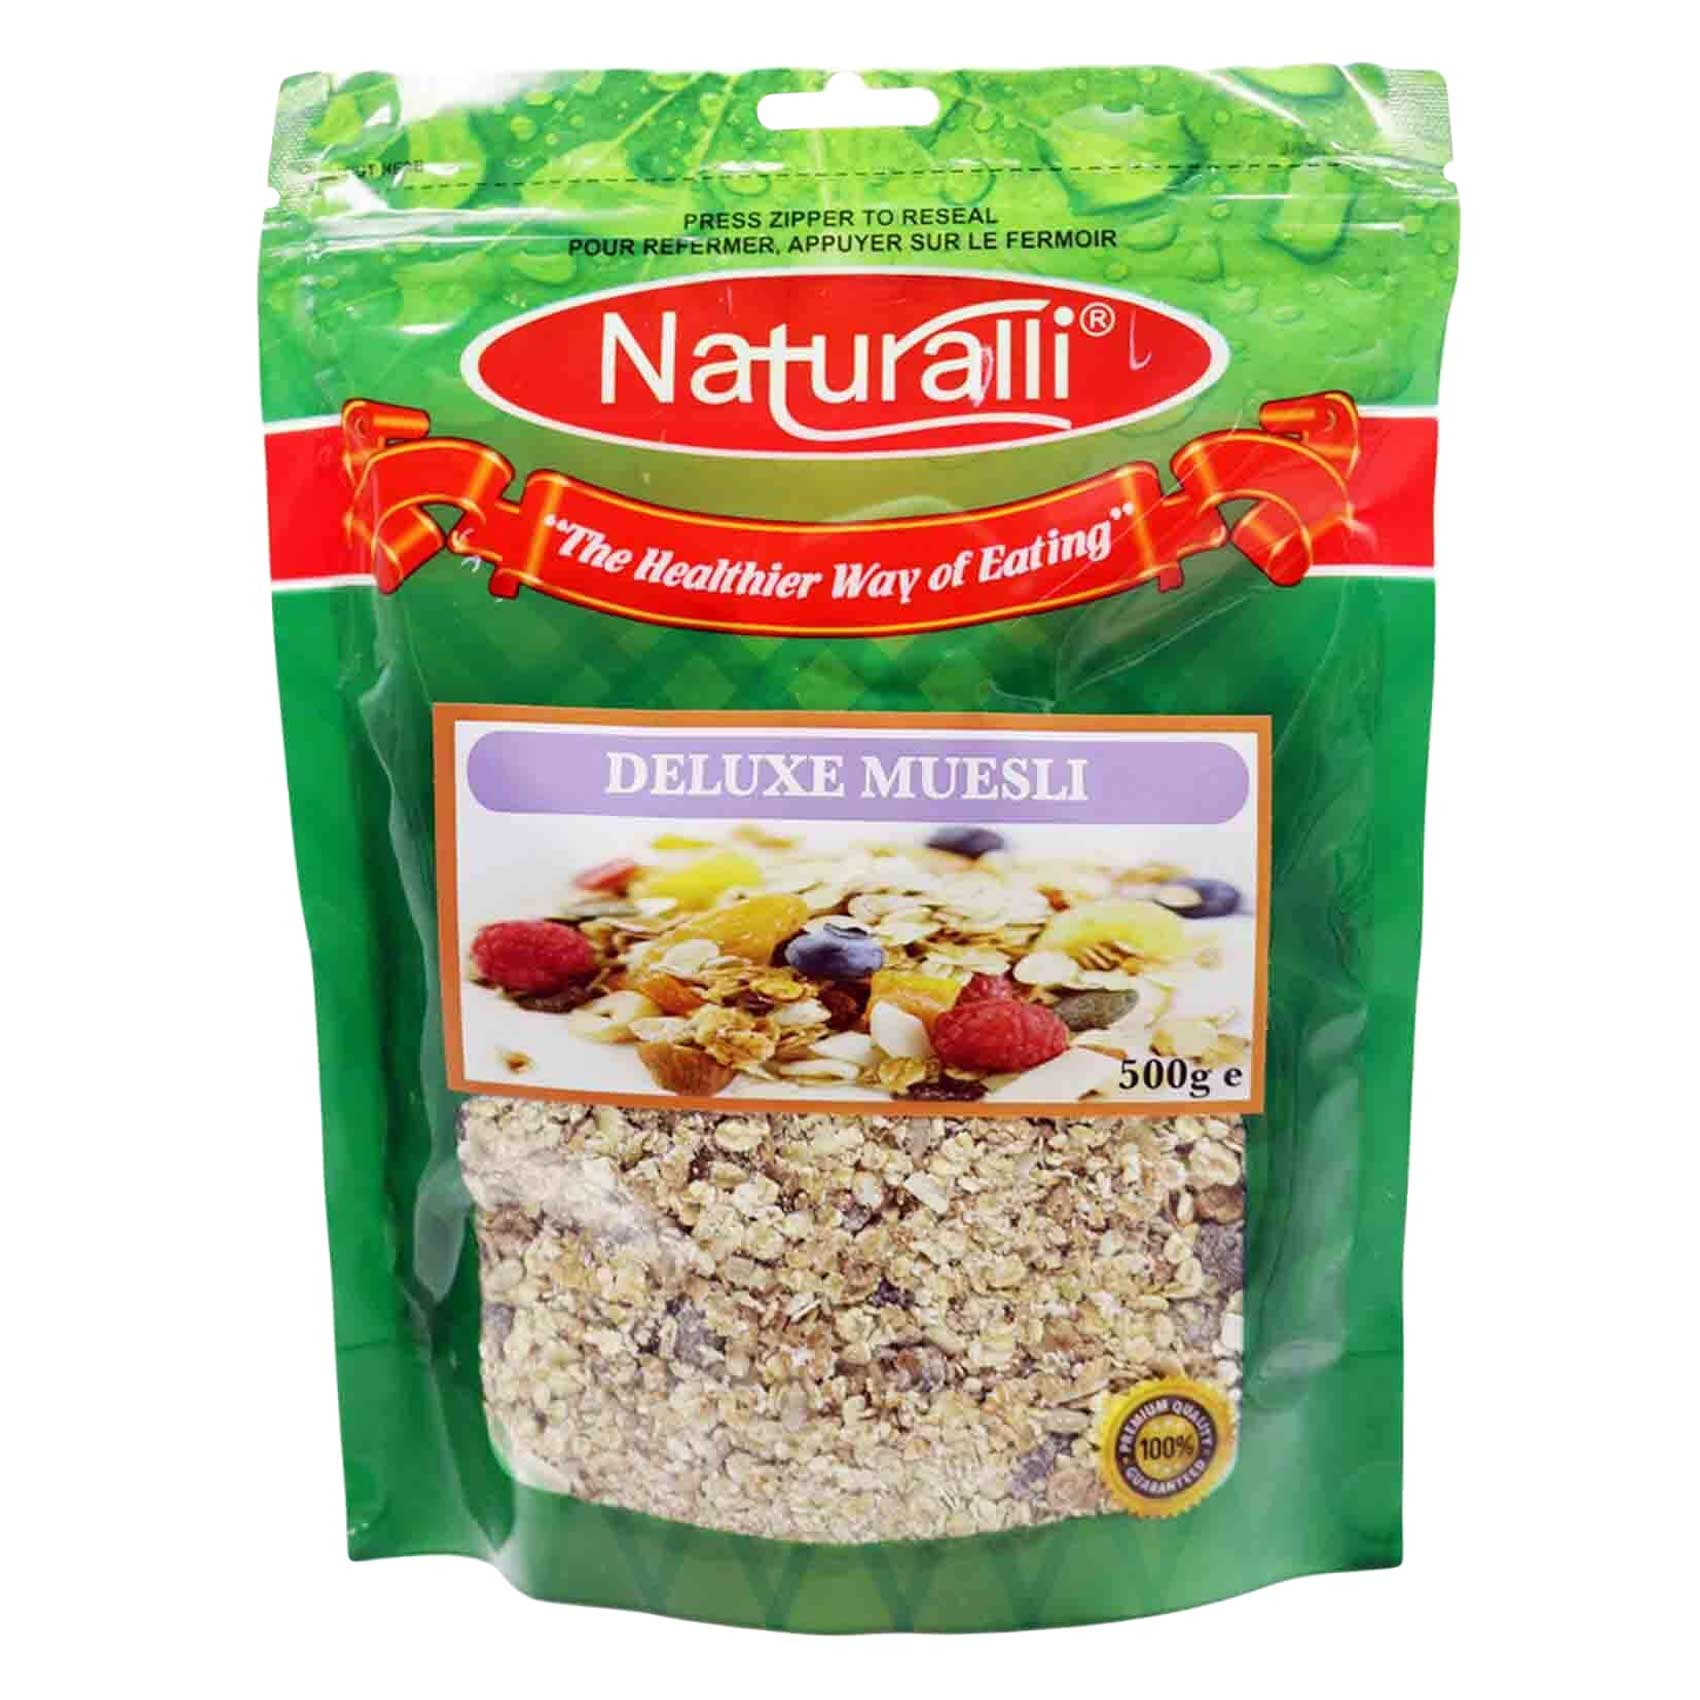 Naturalli Deluxe Muesli Cereal 500g